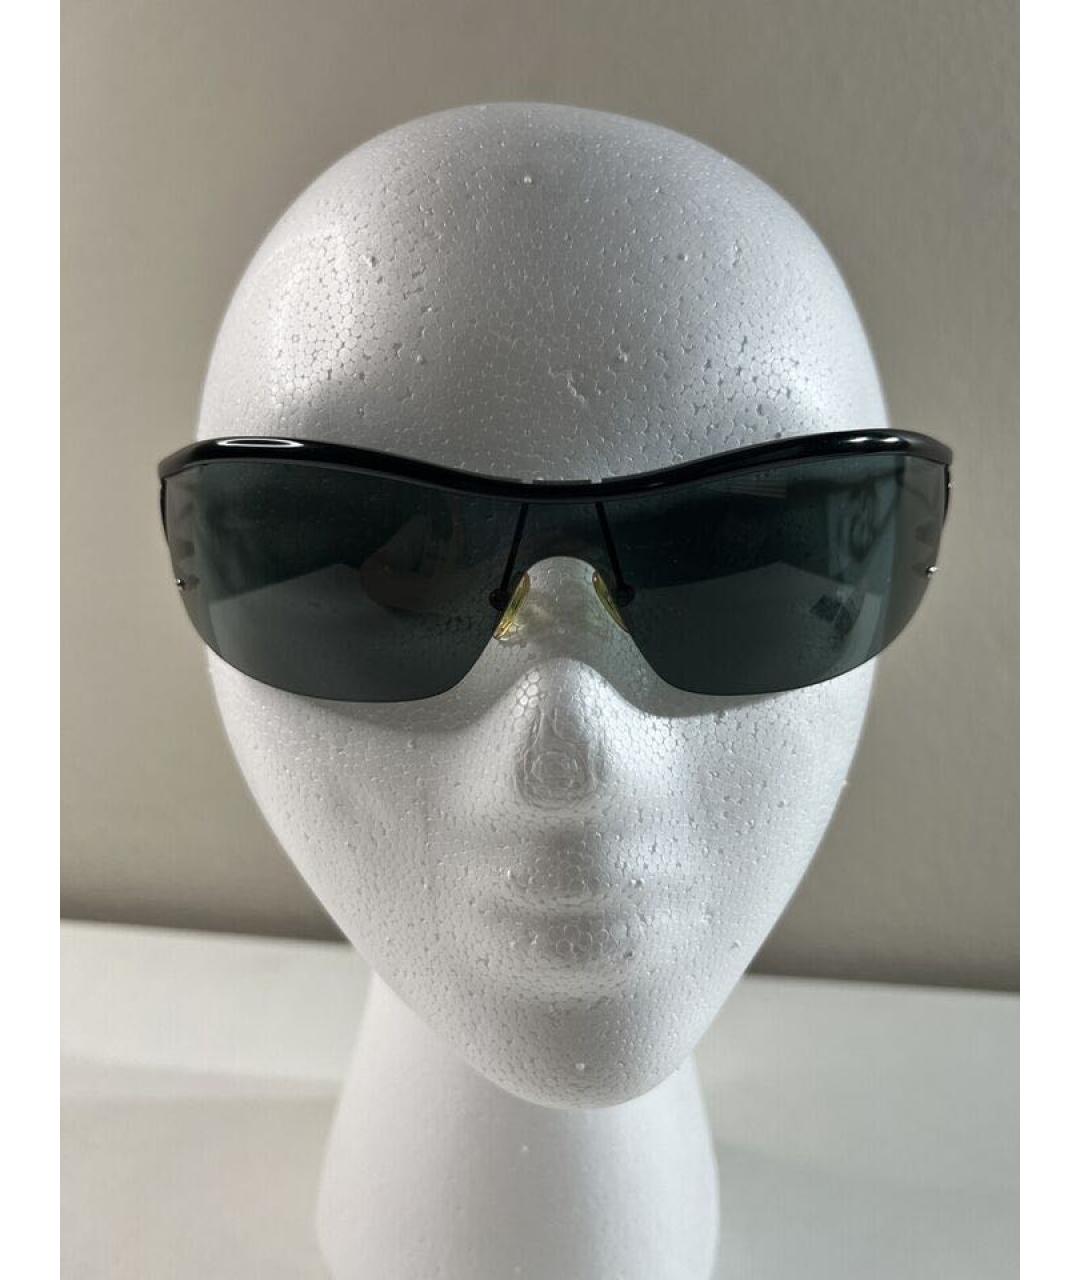 GIORGIO ARMANI Черные металлические солнцезащитные очки, фото 5